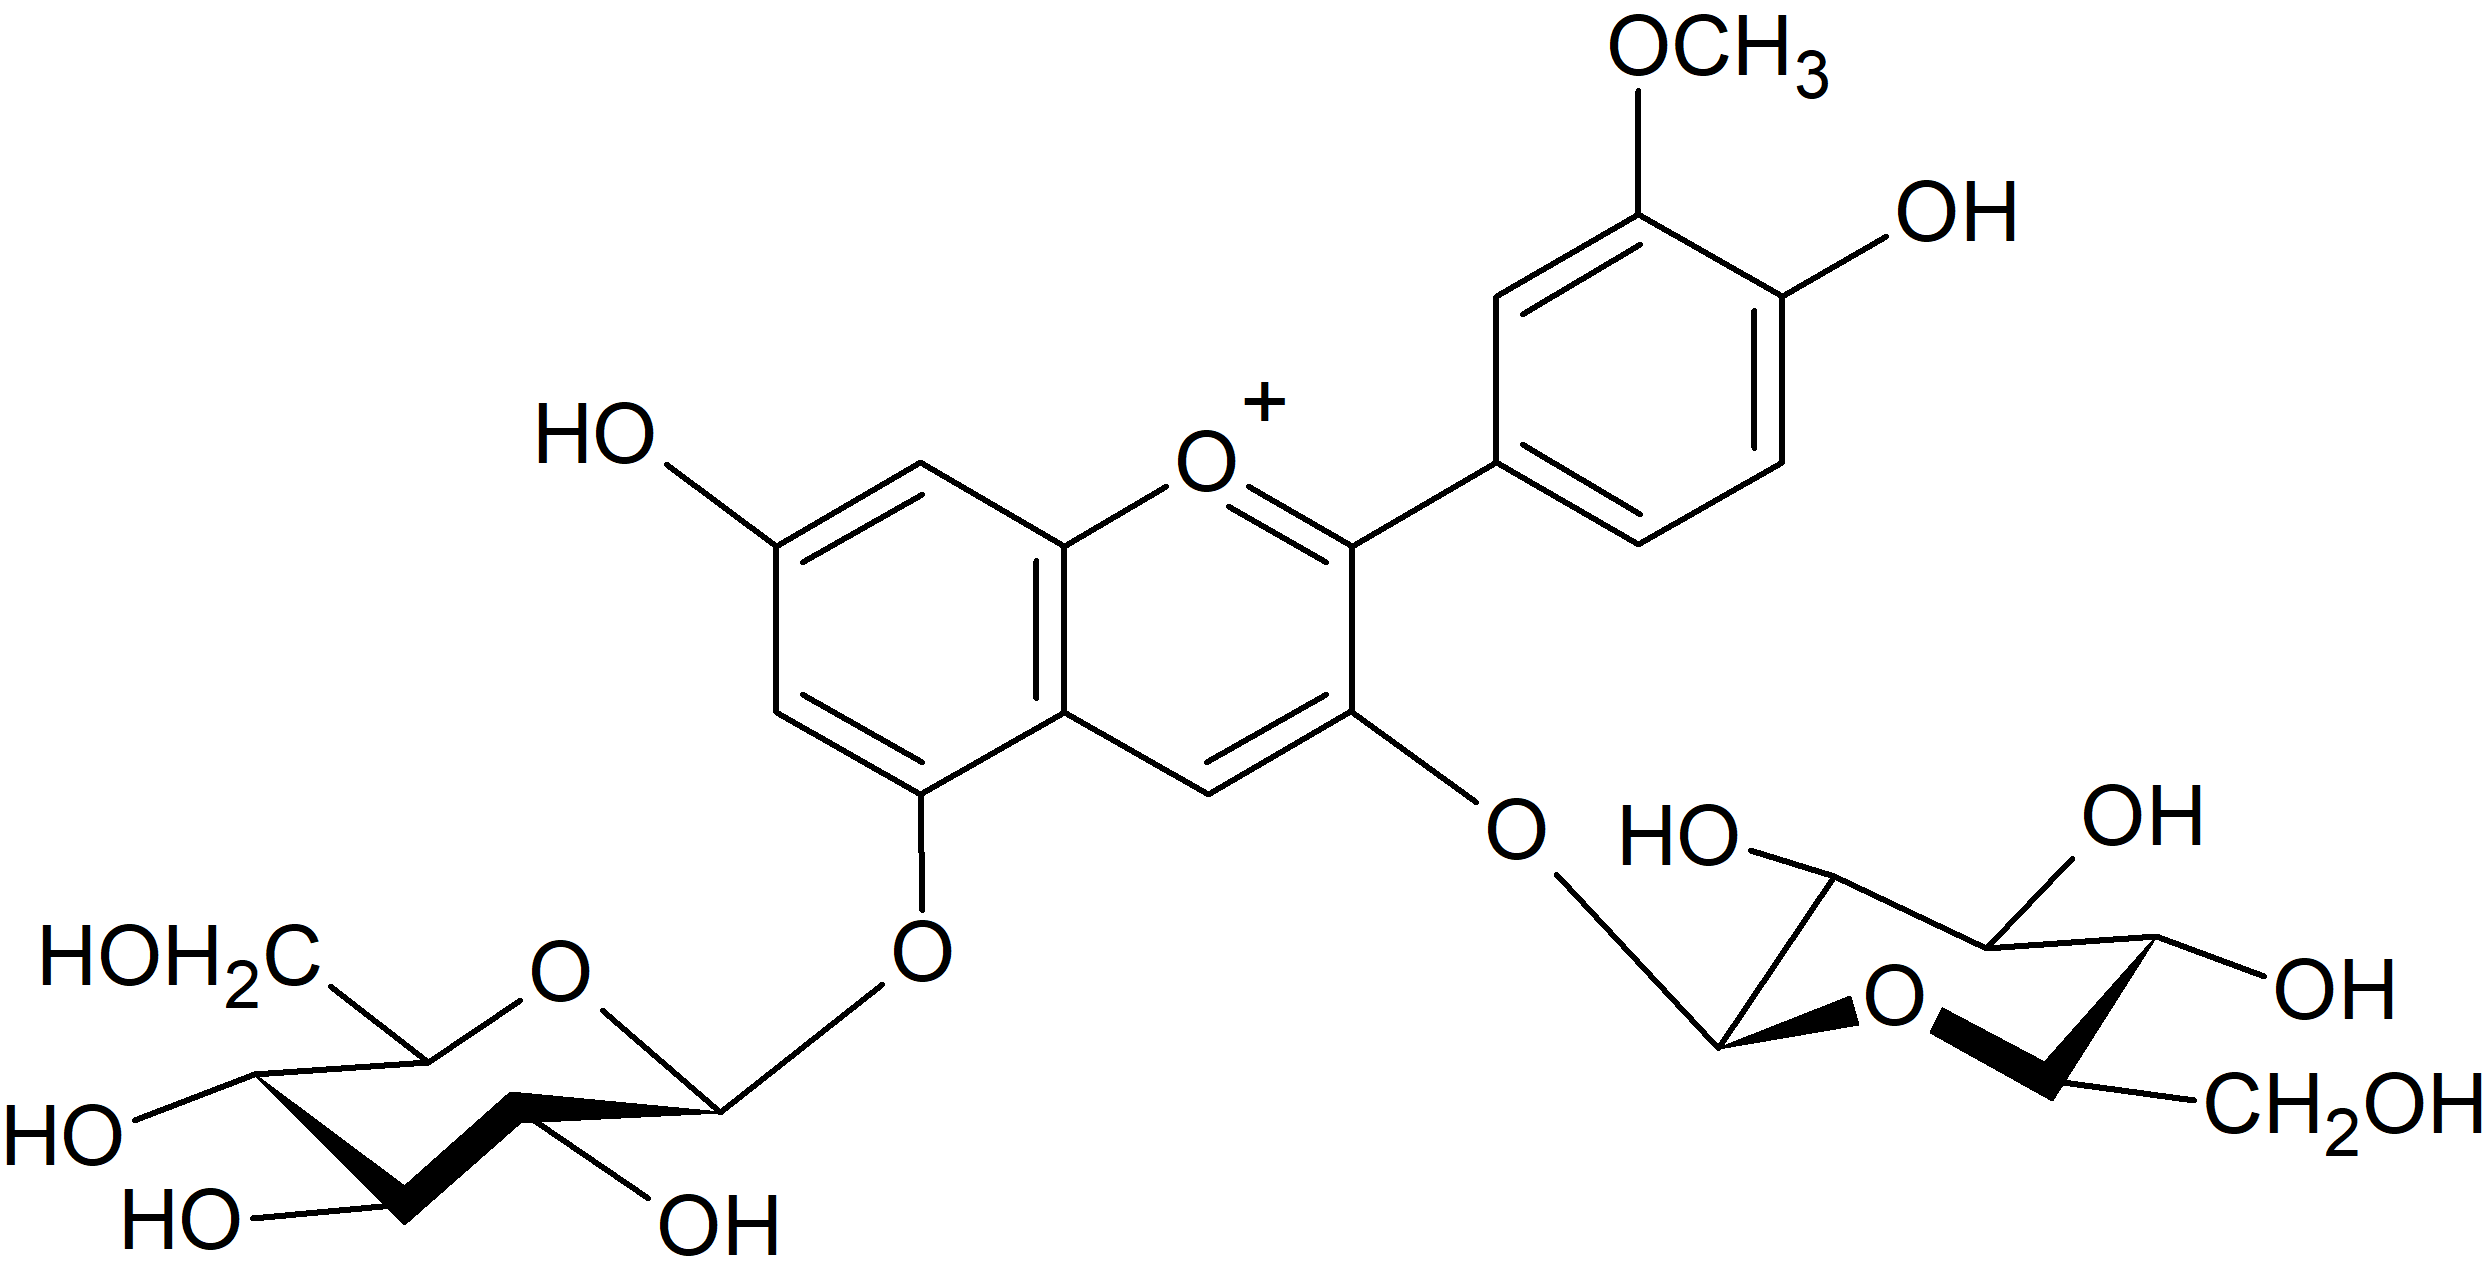 Peonidin 3,5-di-O-glucoside